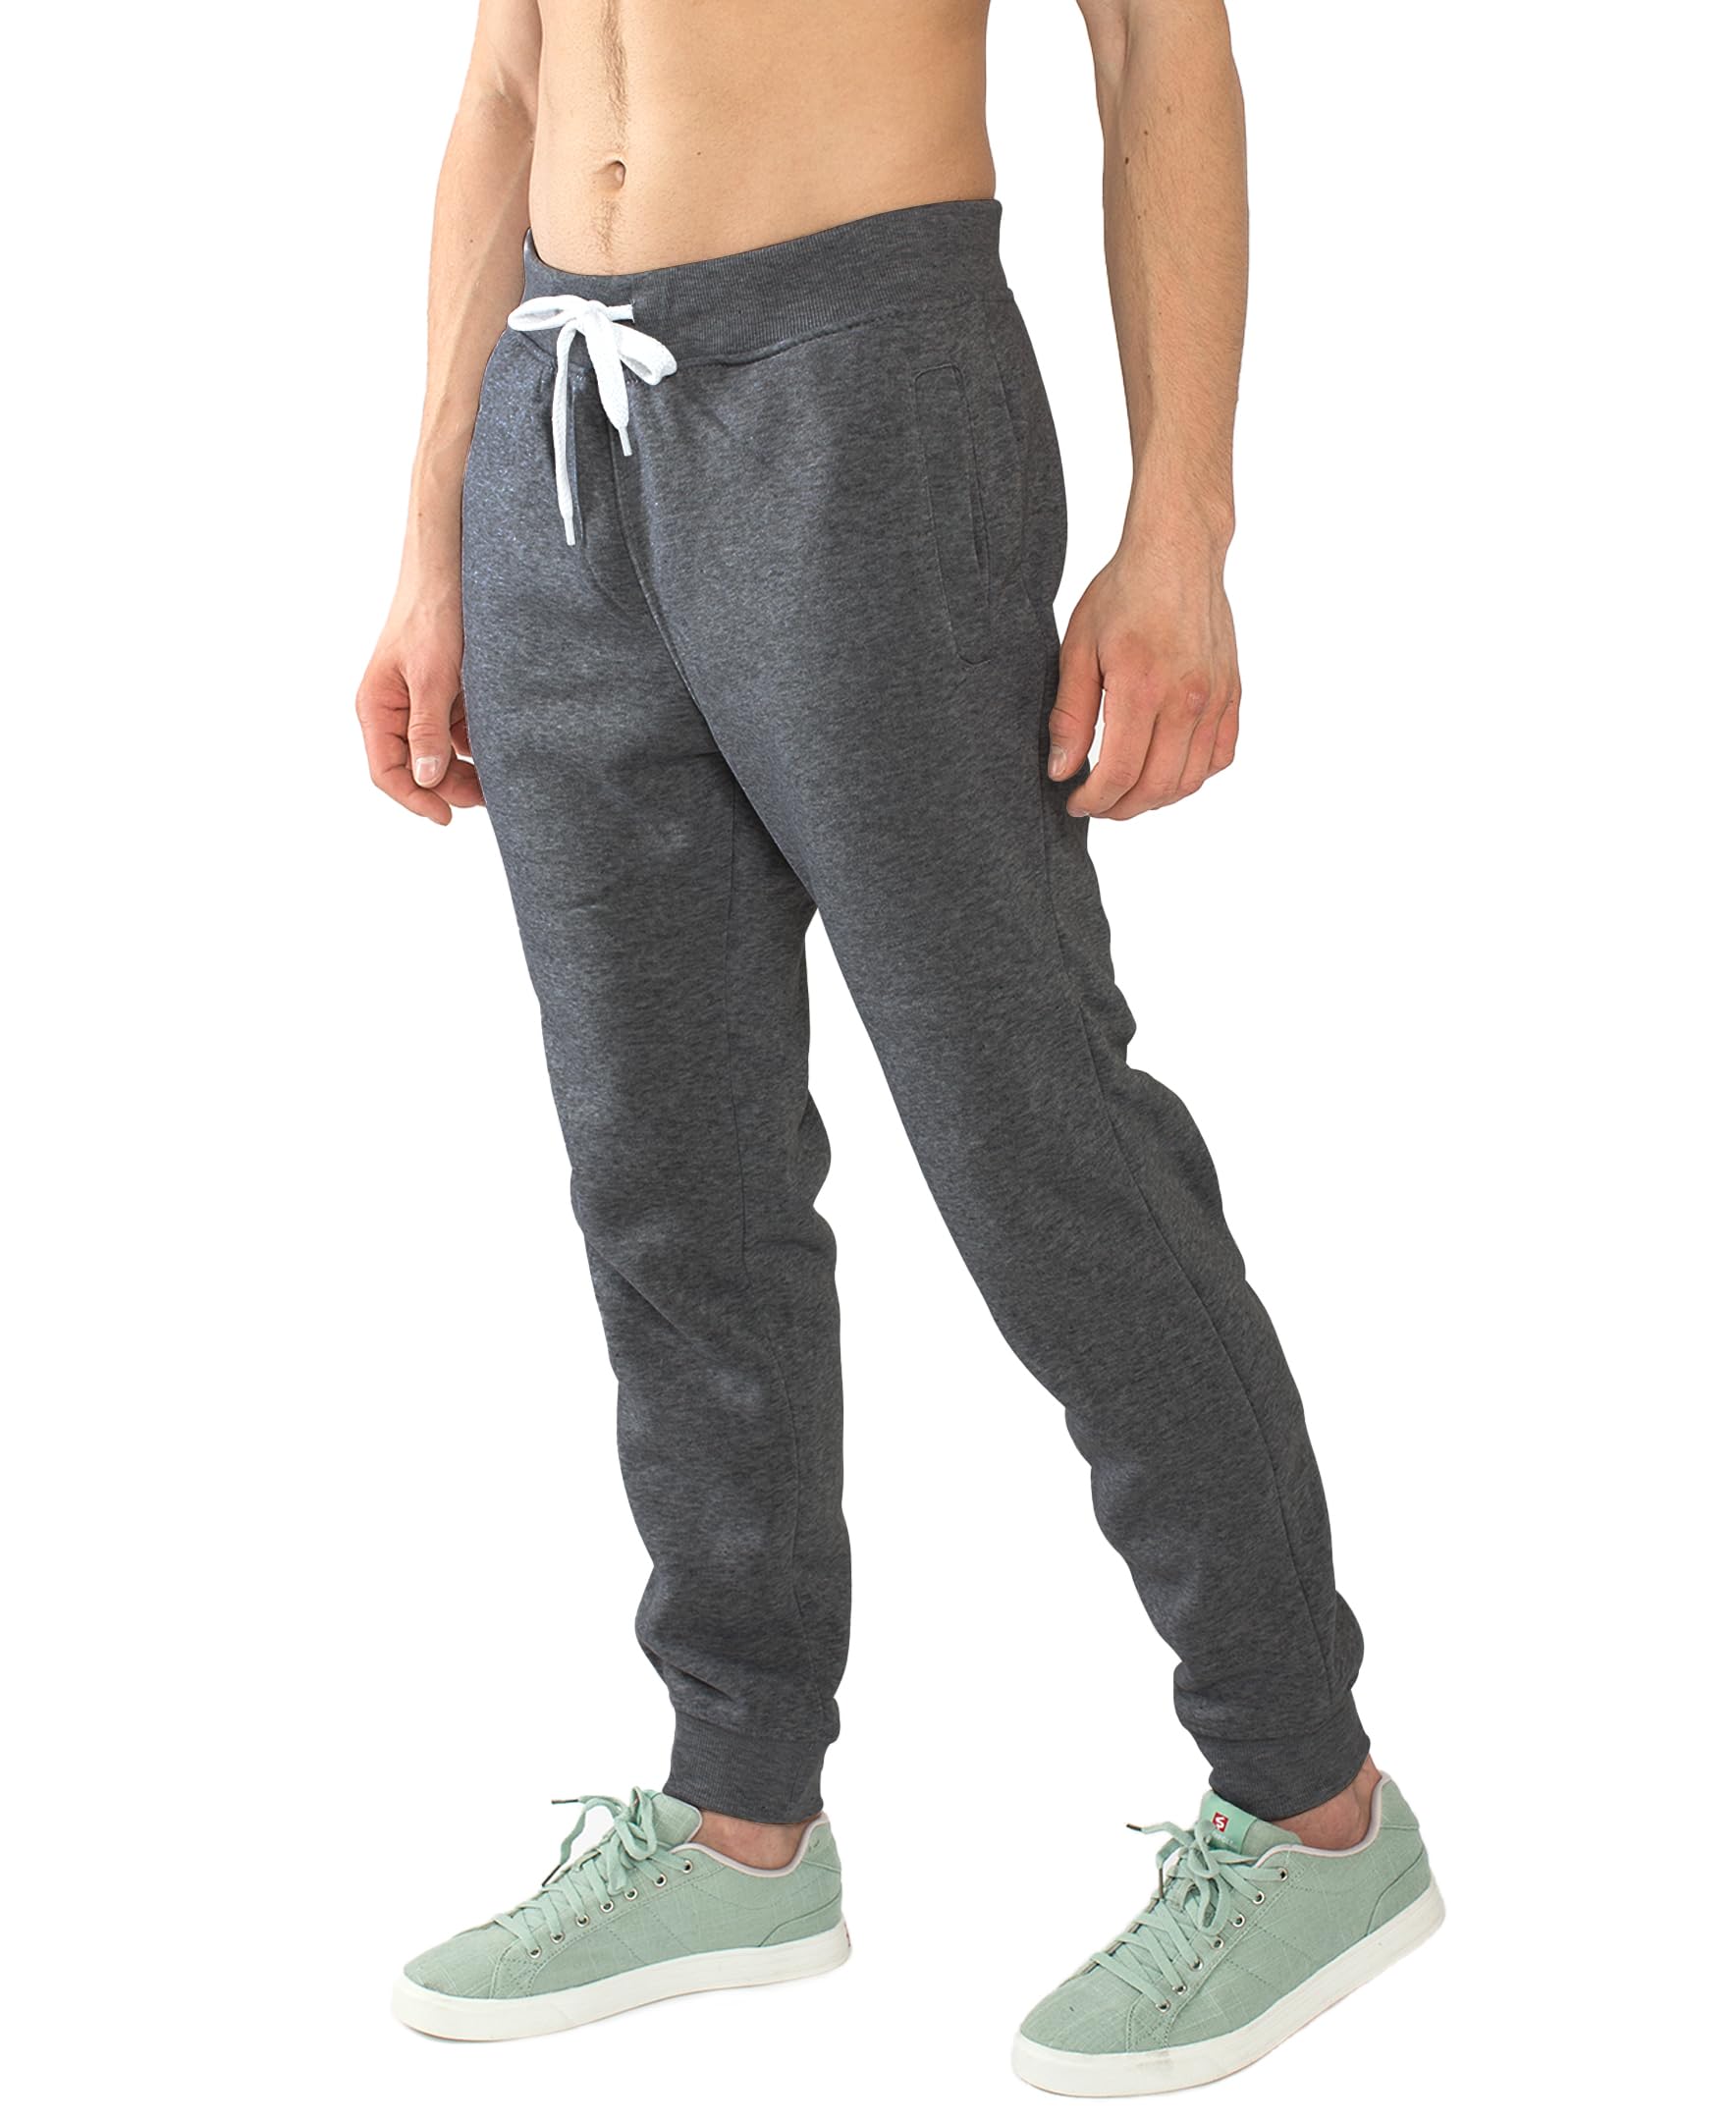 Southpole Men's Basic Jogger Sweatpants, Fleece and Tech Woven